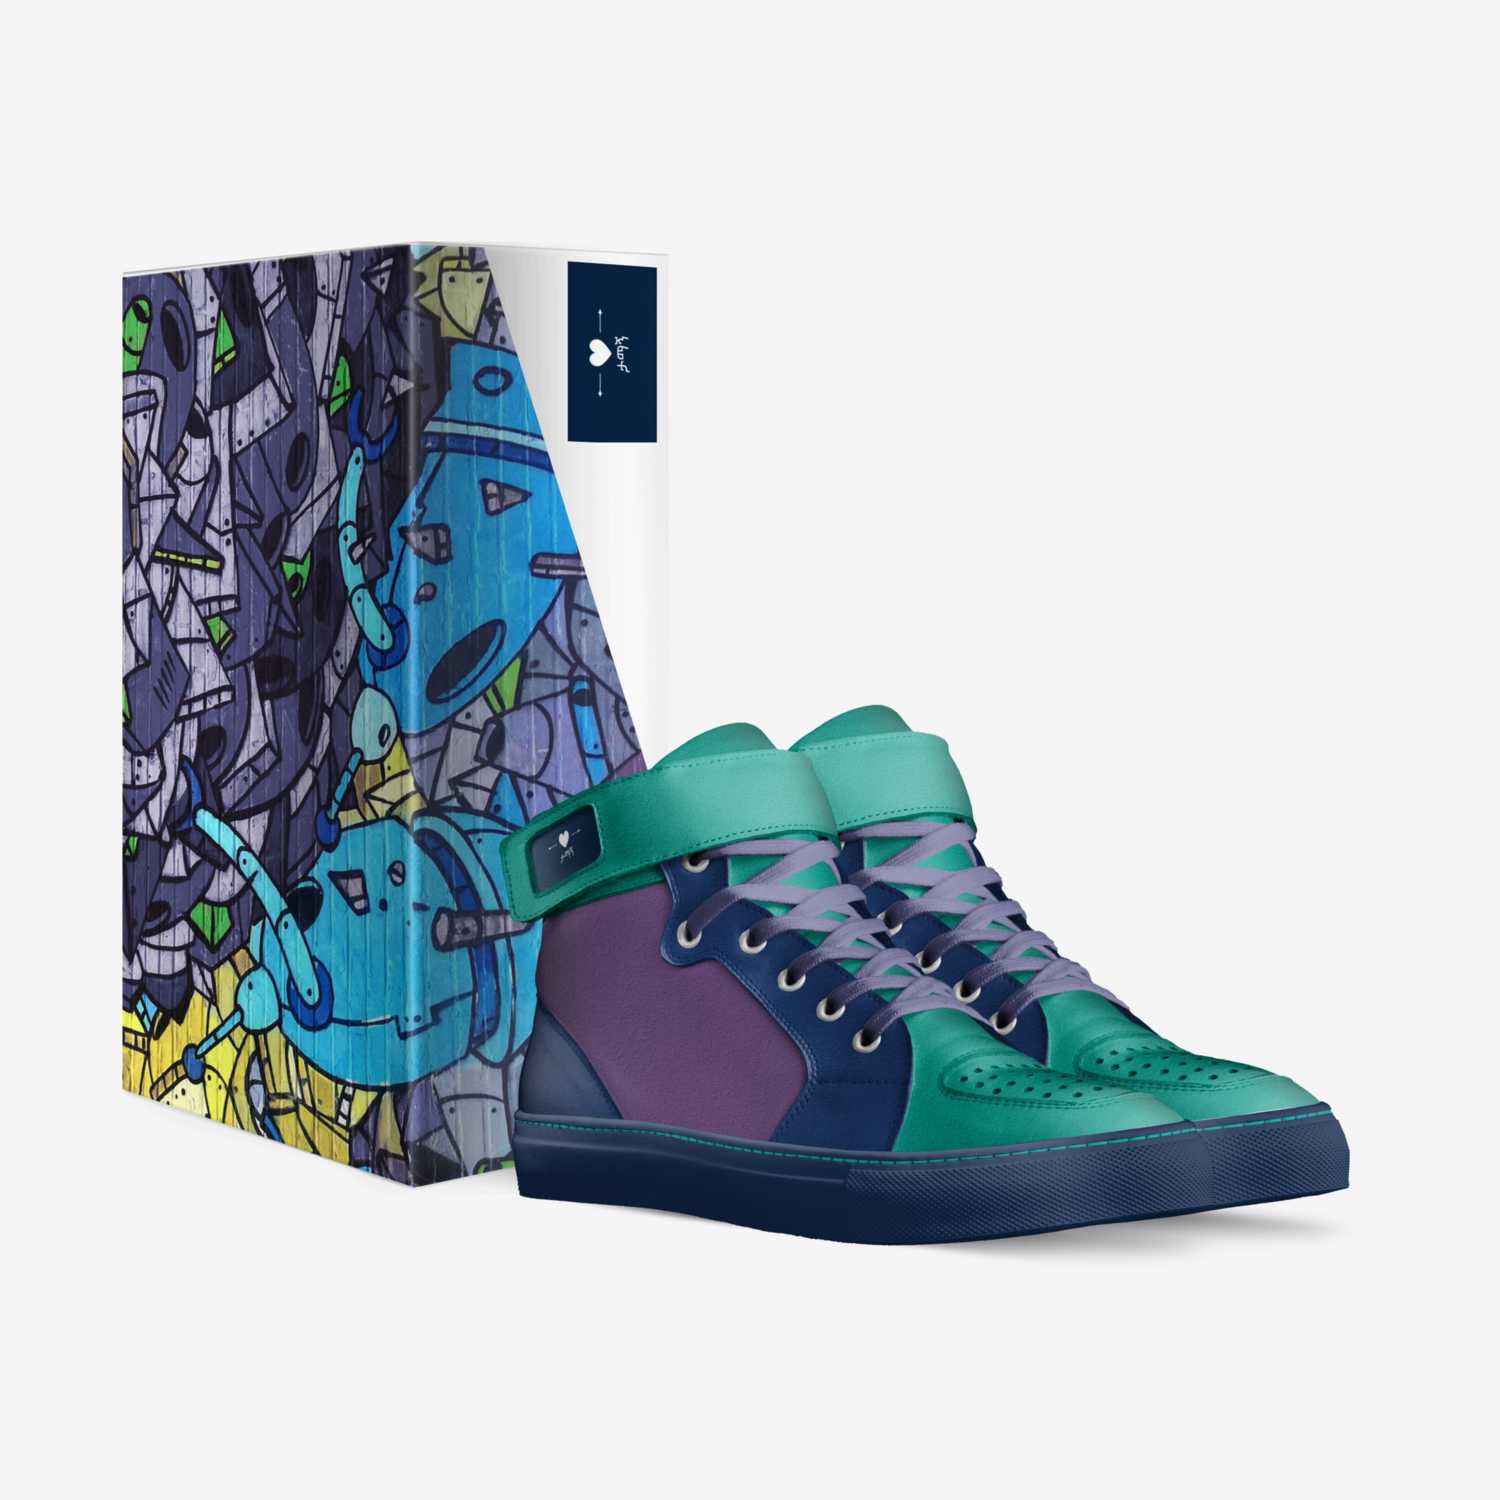 ታማኝ custom made in Italy shoes by Frankie Free | Box view